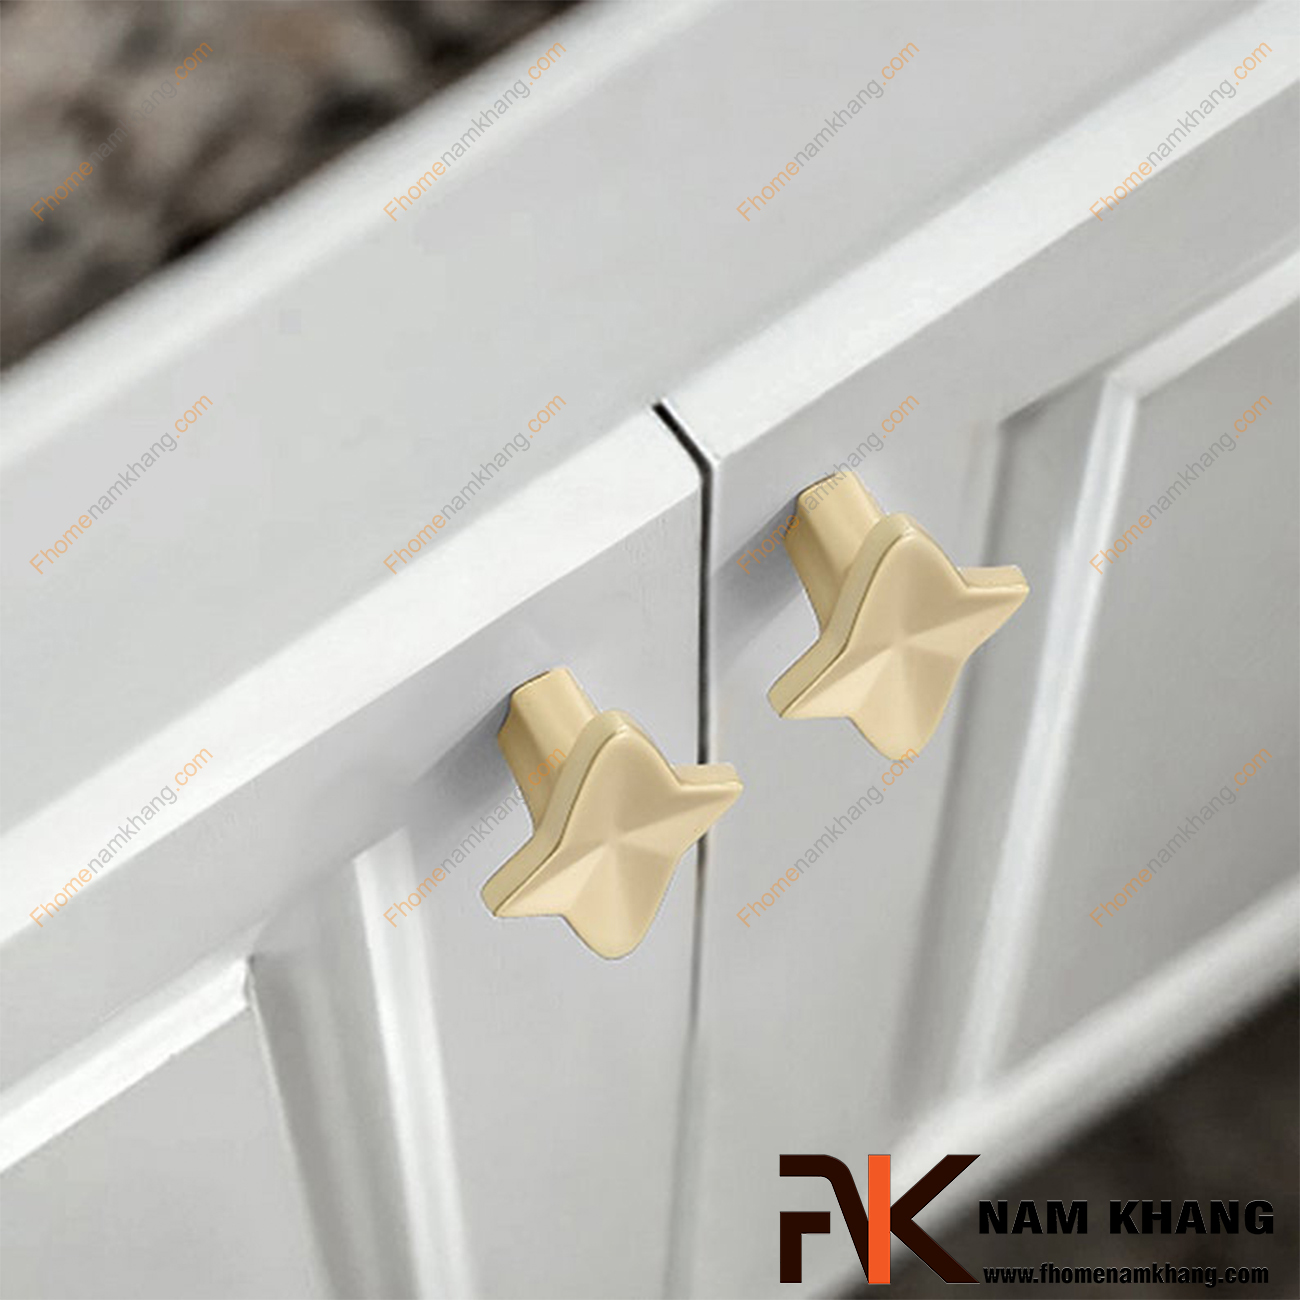 Núm cửa tủ sao 4 cánh màu vàng mờ NK413-VM lấy cảm hứng theo sao 4 cánh với các góc cạnh được xử lý có chiều sâu tạo nên cái nhìn rất độc đáo cho một sản phẩm phụ kiện dành cho cửa tủ. 